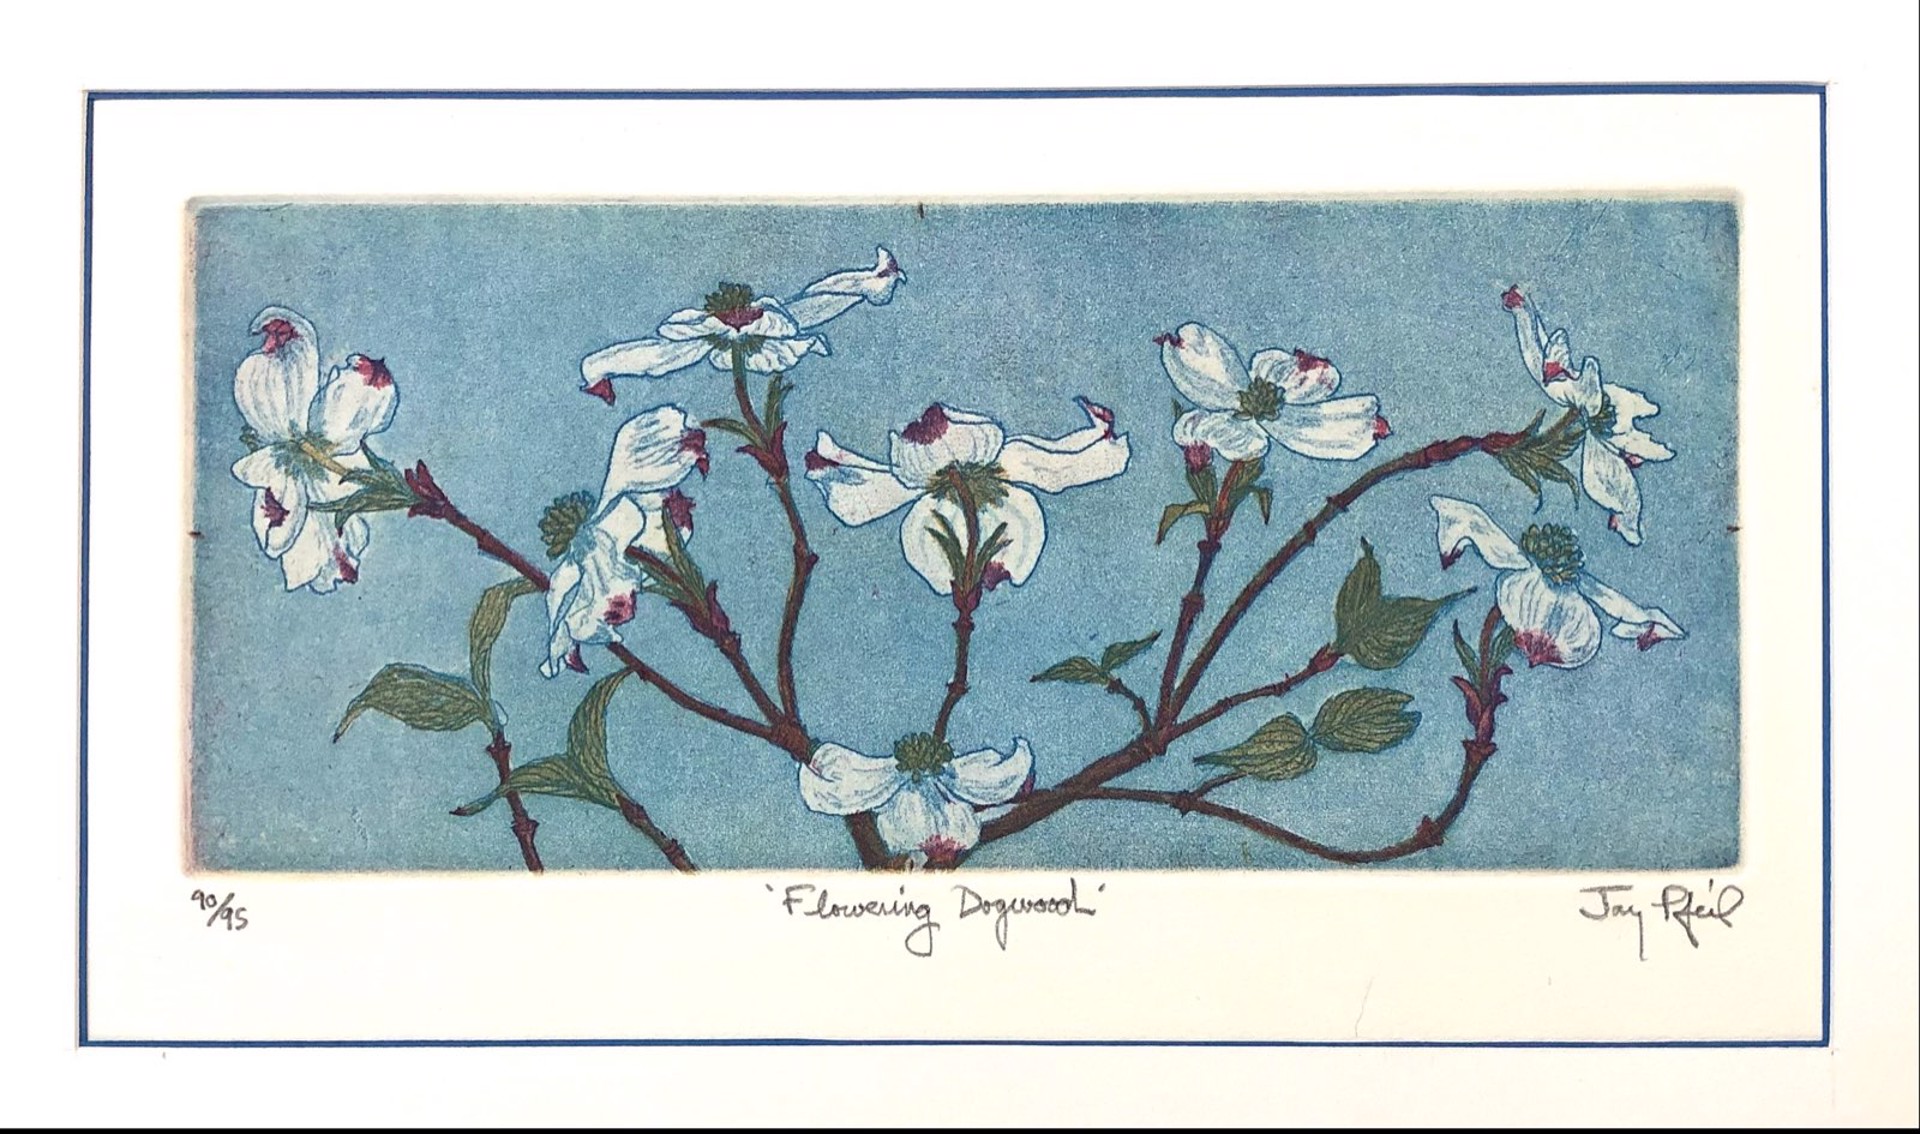 Flowering Dogwood (Unframed) by Jay Pfeil